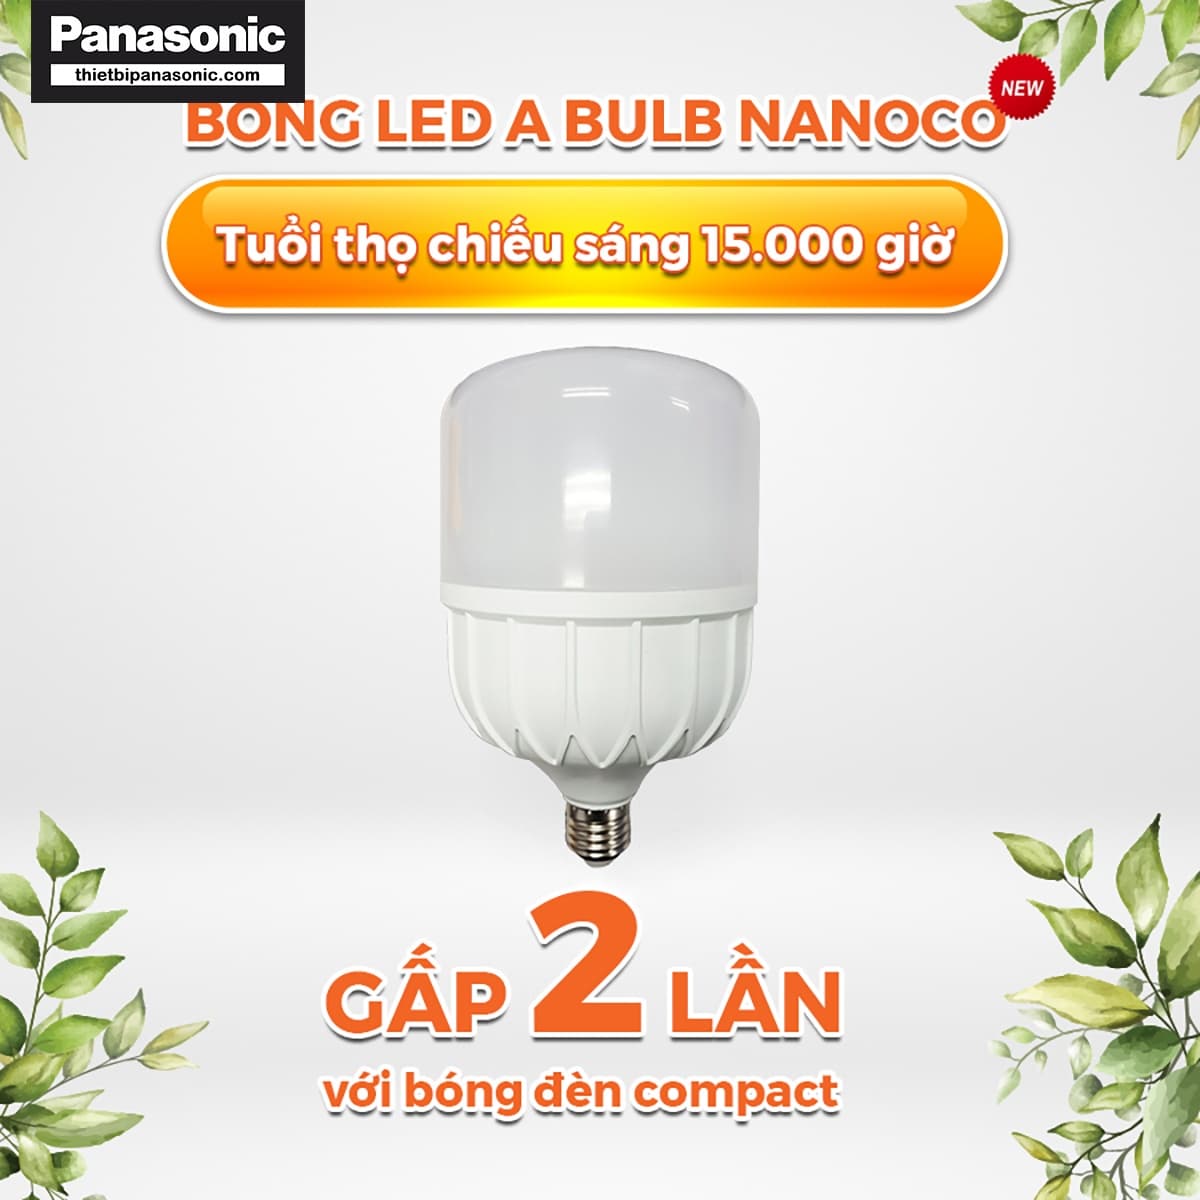 Bóng đèn bulb 40W Nanoco NLB406, NLB404, NLB403 mang lại tuổi thọ cao gấp 2 lần bóng Compact